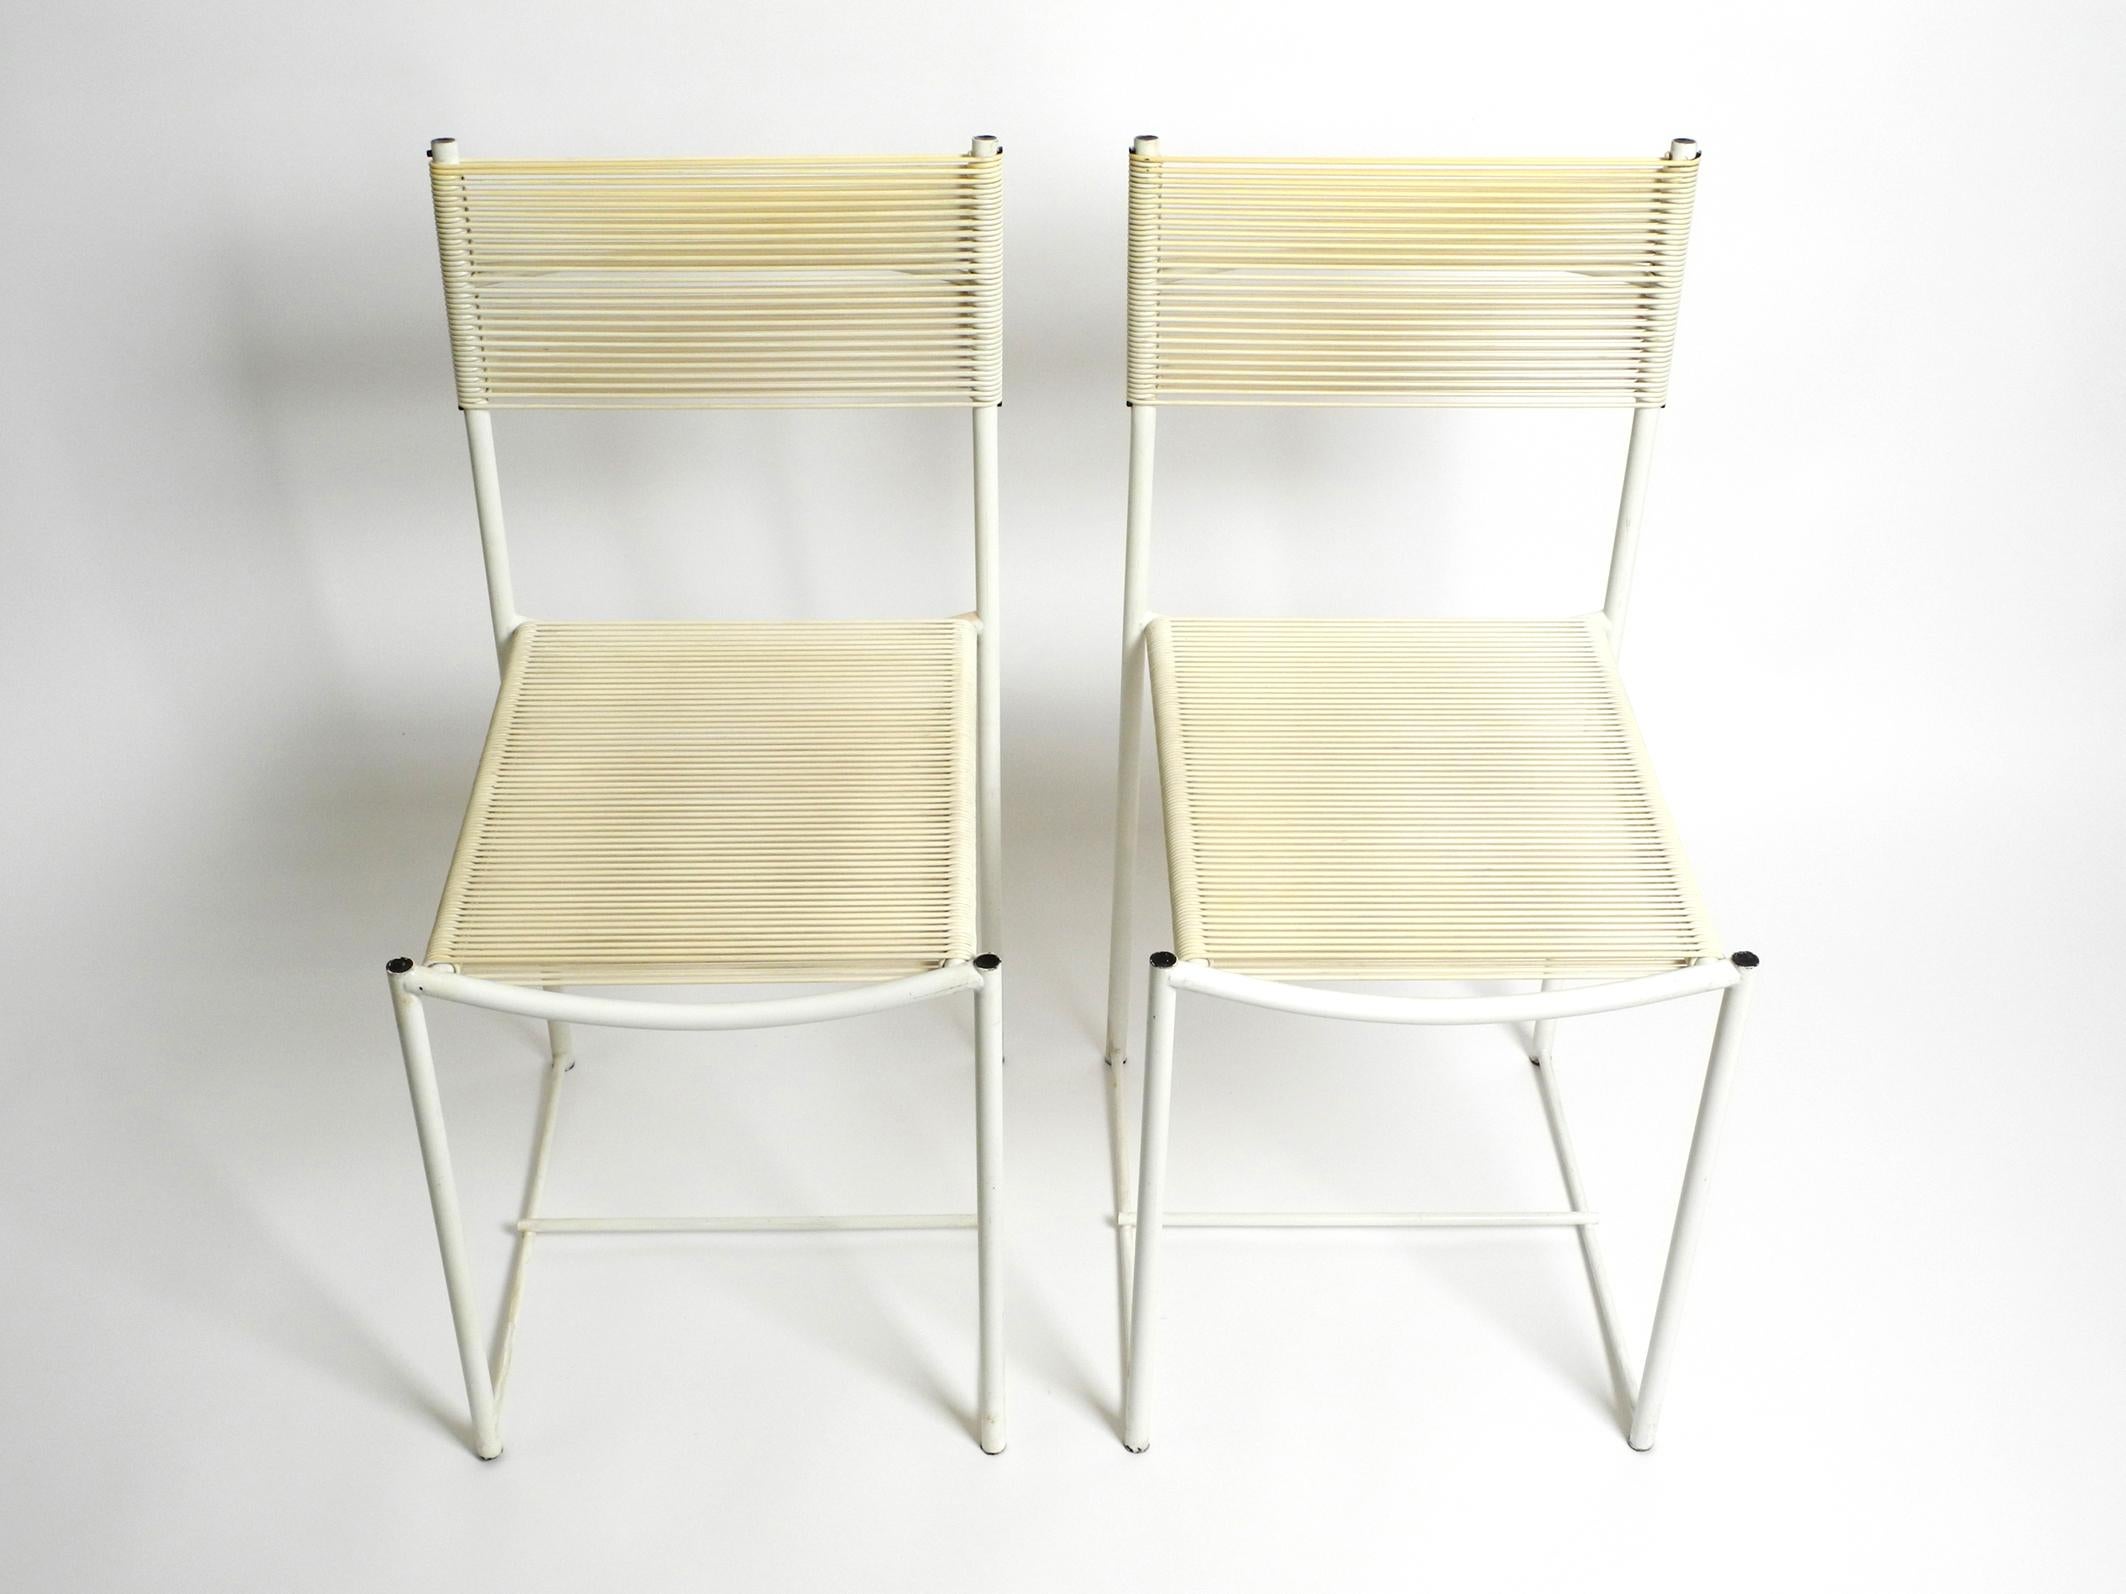 Paire de chaises Spagetti originales des années 70 en blanc par Giandomenico Belotti. Le fabricant est un alias. Fabriquées en Italie. Rare en cadre laqué blanc et sièges + dossiers blancs. Magnifique design italien minimaliste de l'ère du Pop Art.